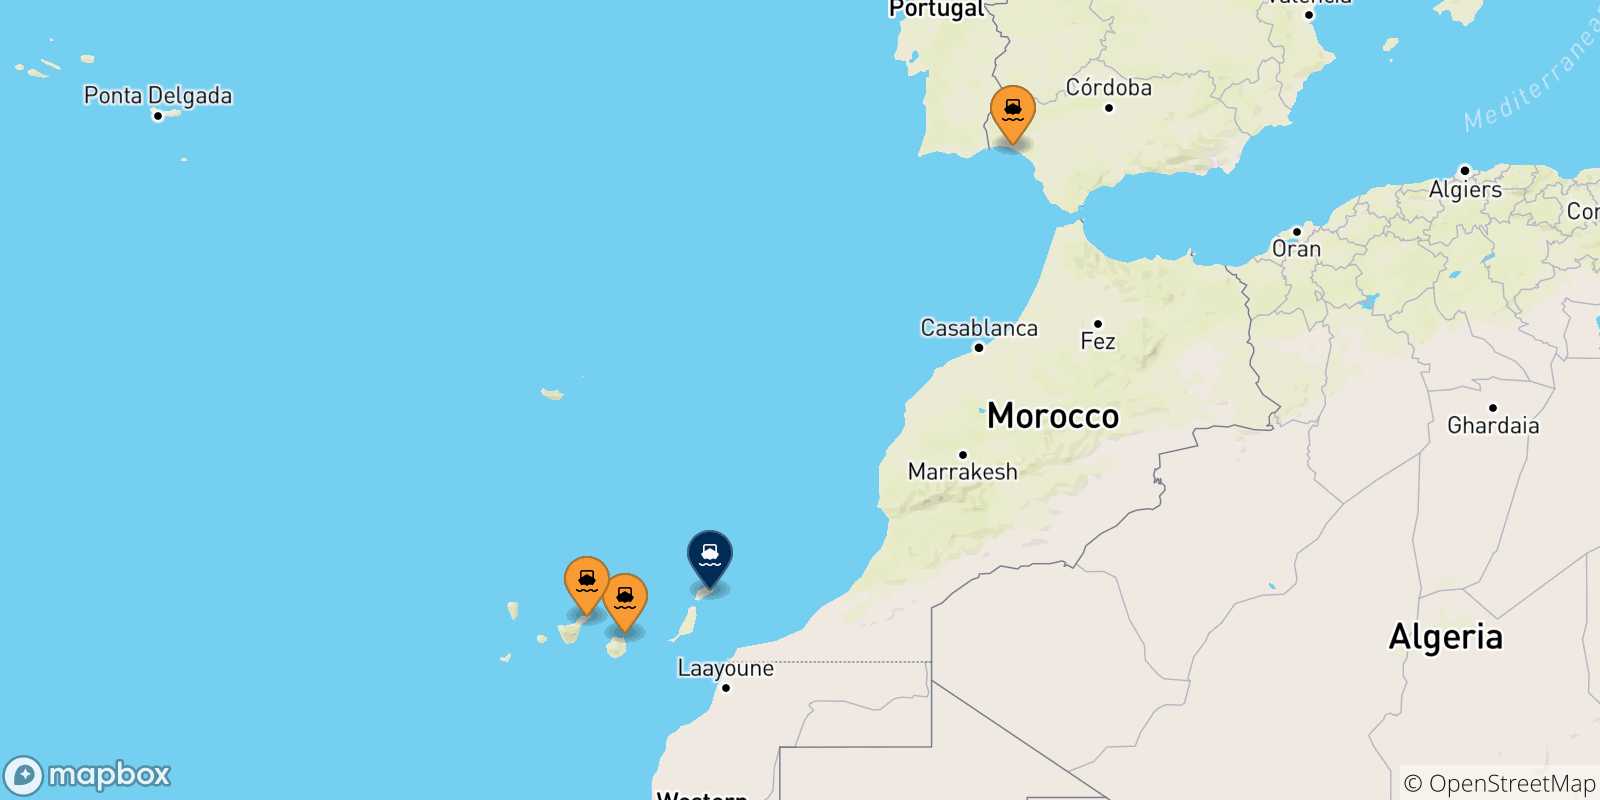 Mappa delle possibili rotte tra la Spagna e Arrecife (Lanzarote)